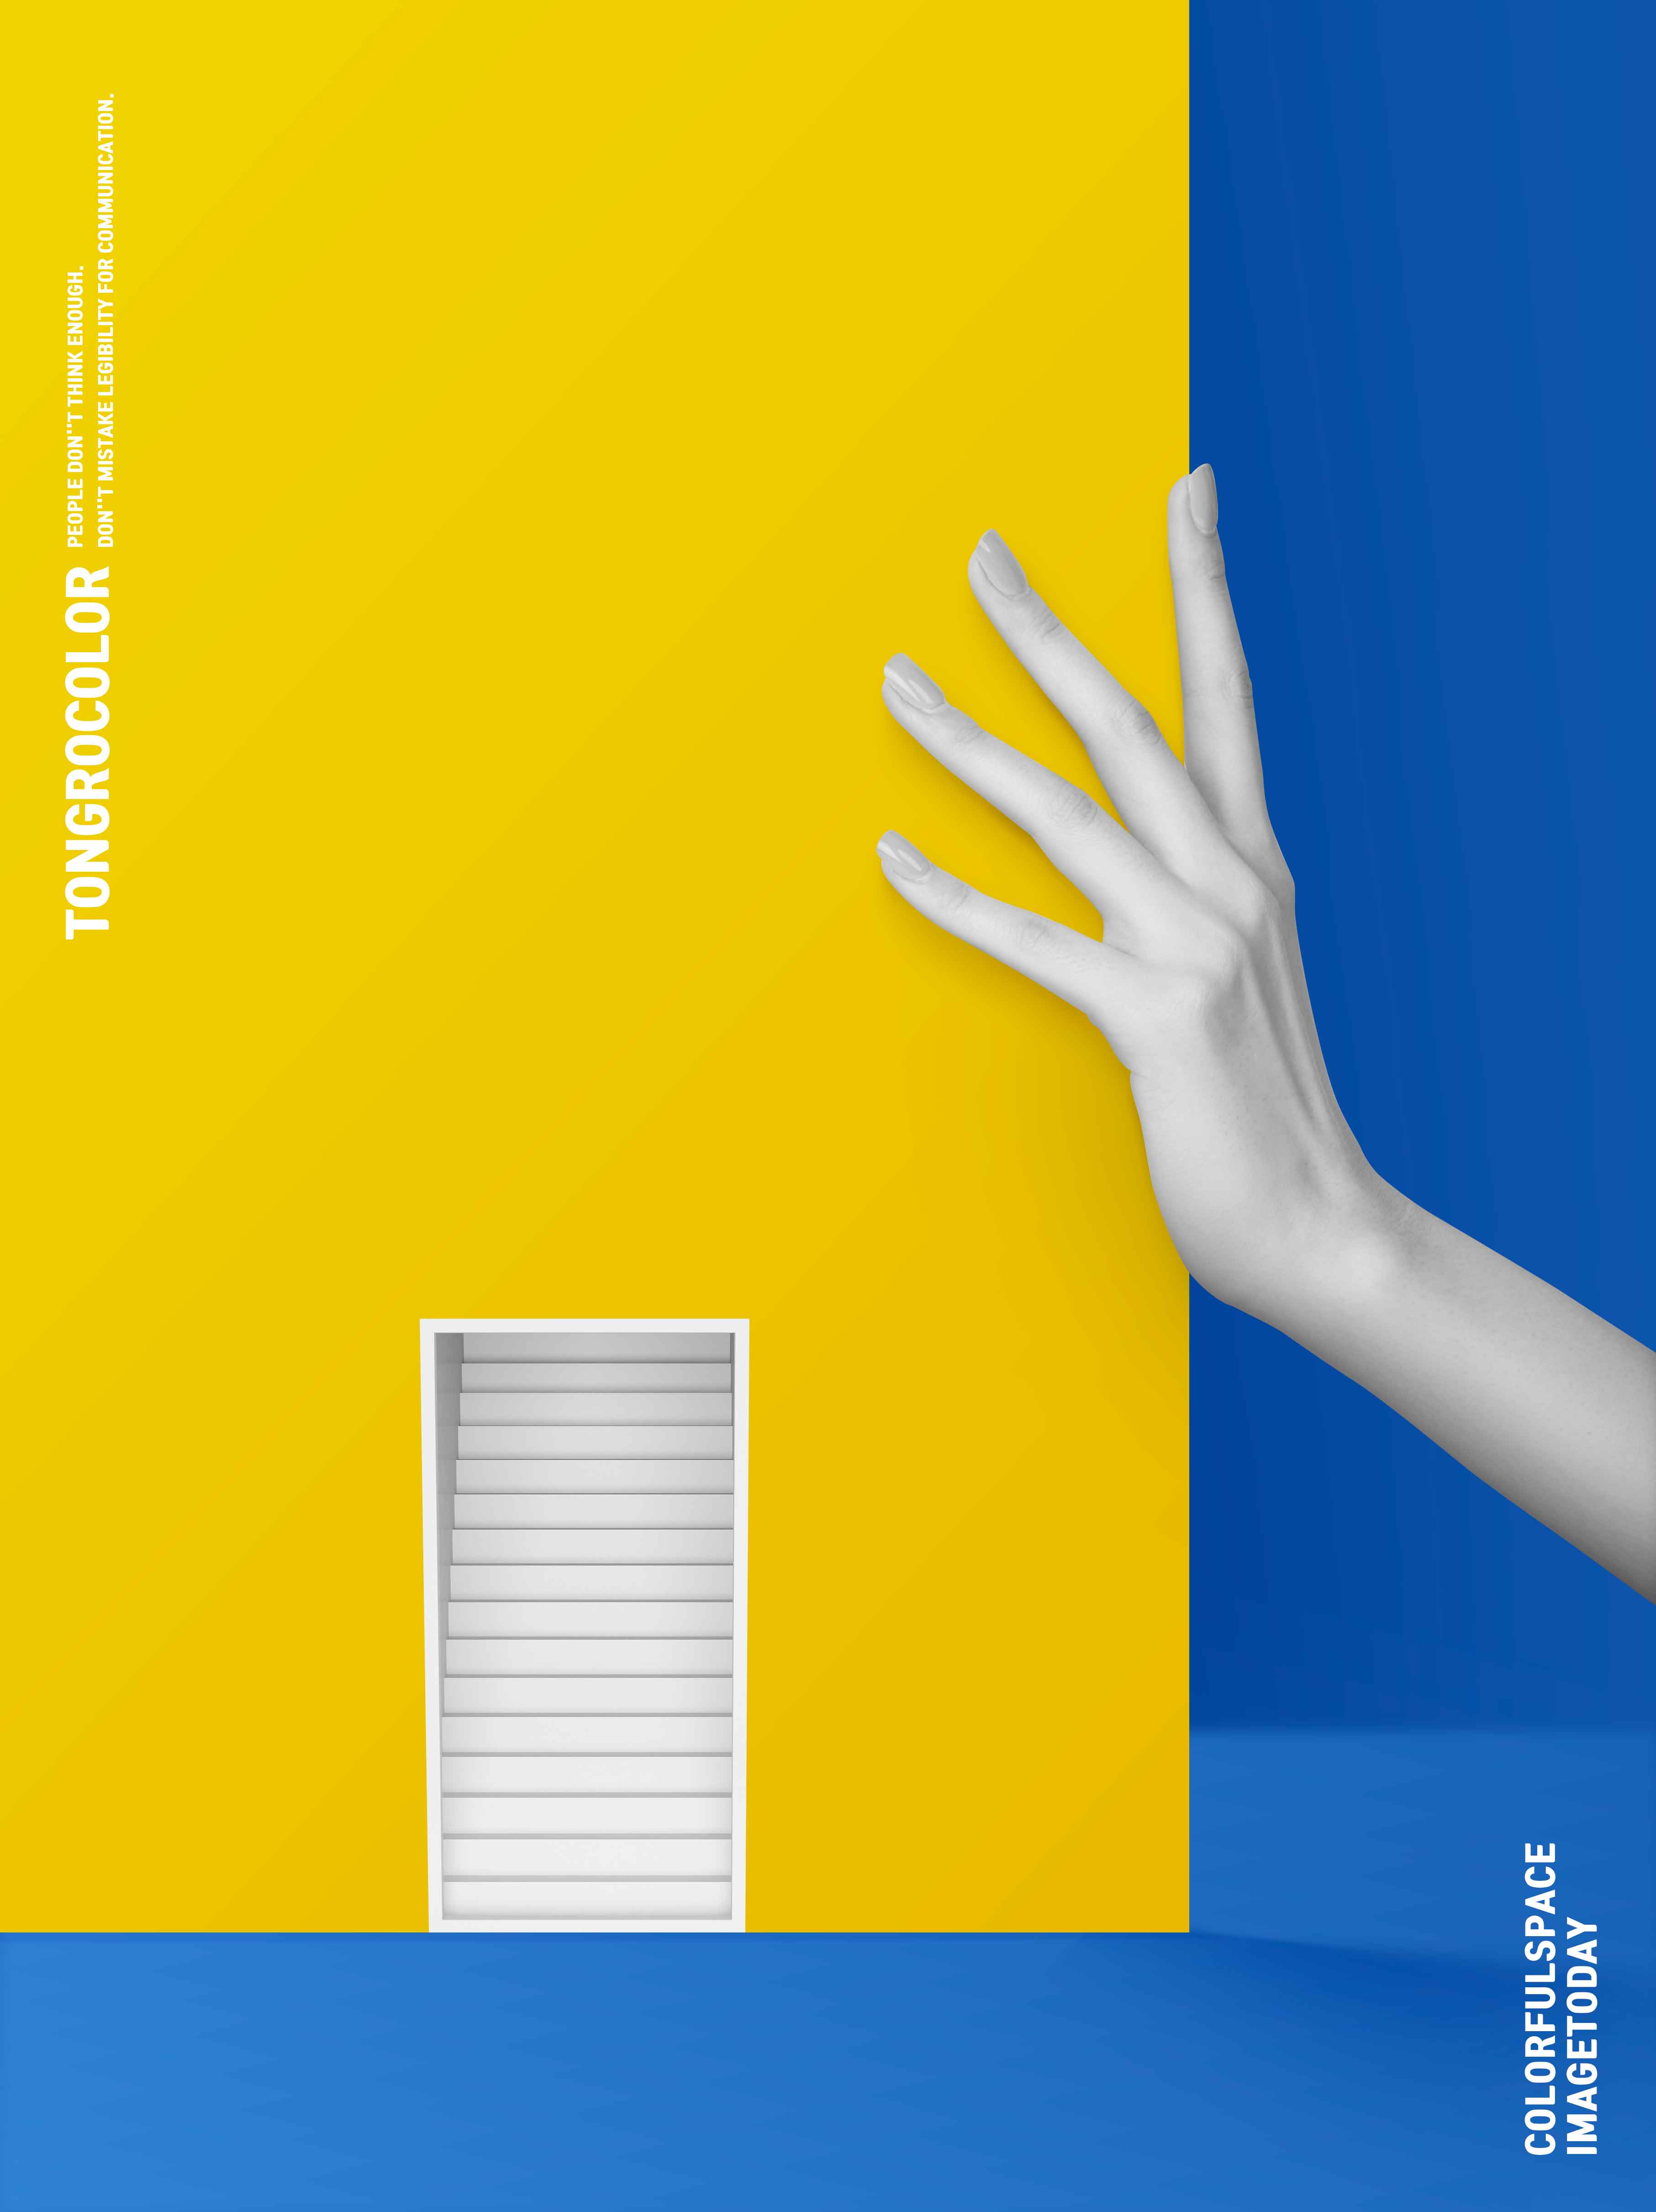 黄蓝配色抽象空间多用途海报psd素材插图